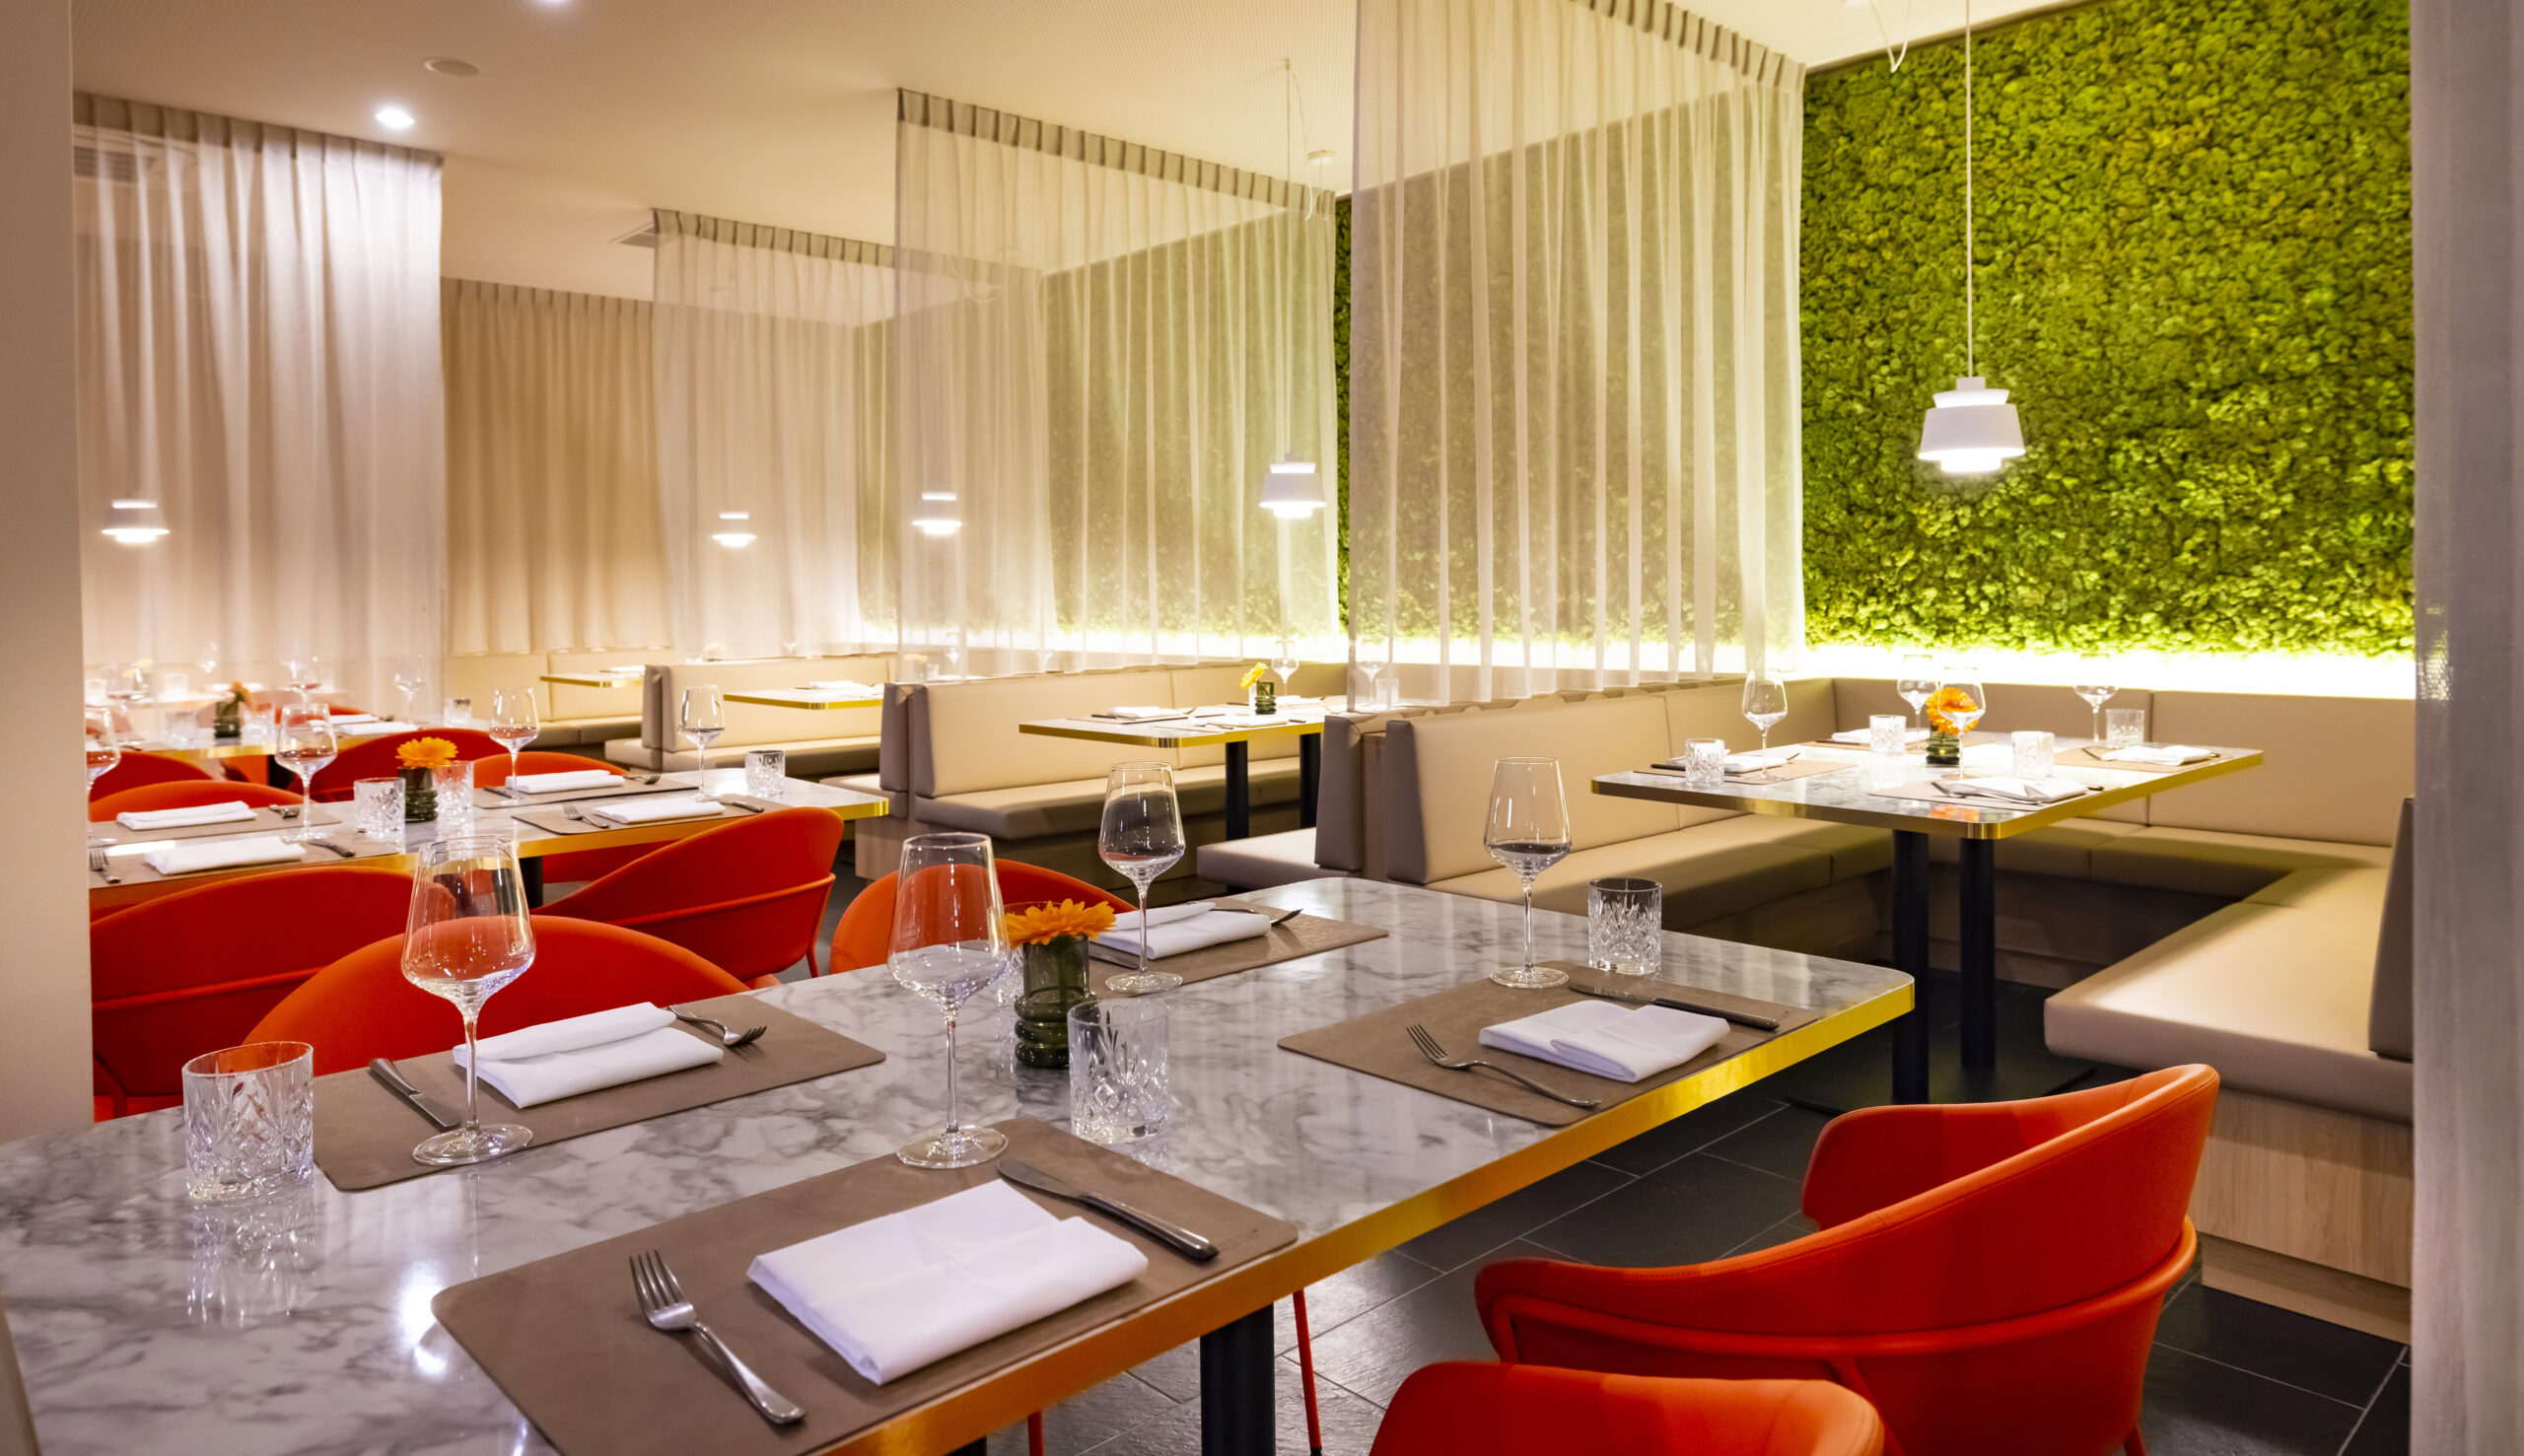 Restaurant Magnolie mit grüner Mooswand im Hintergrund